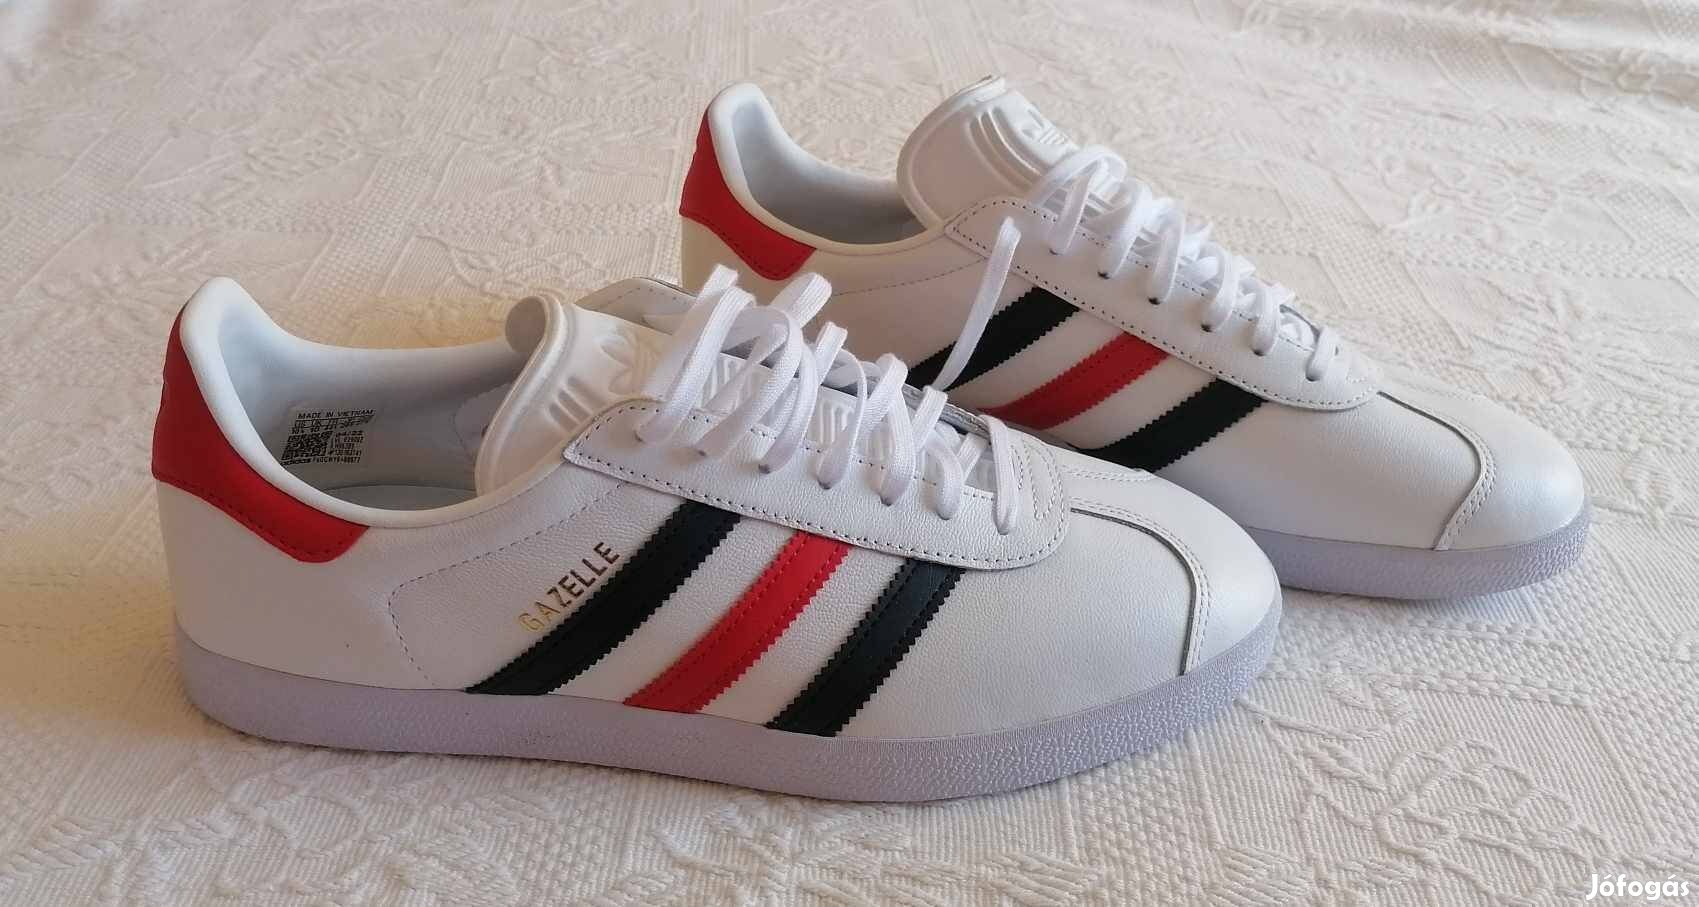 Eladó Új "Adidas" Gazelle Fehér Bőr Sport Cipő / Sneakers (44.5 méret)